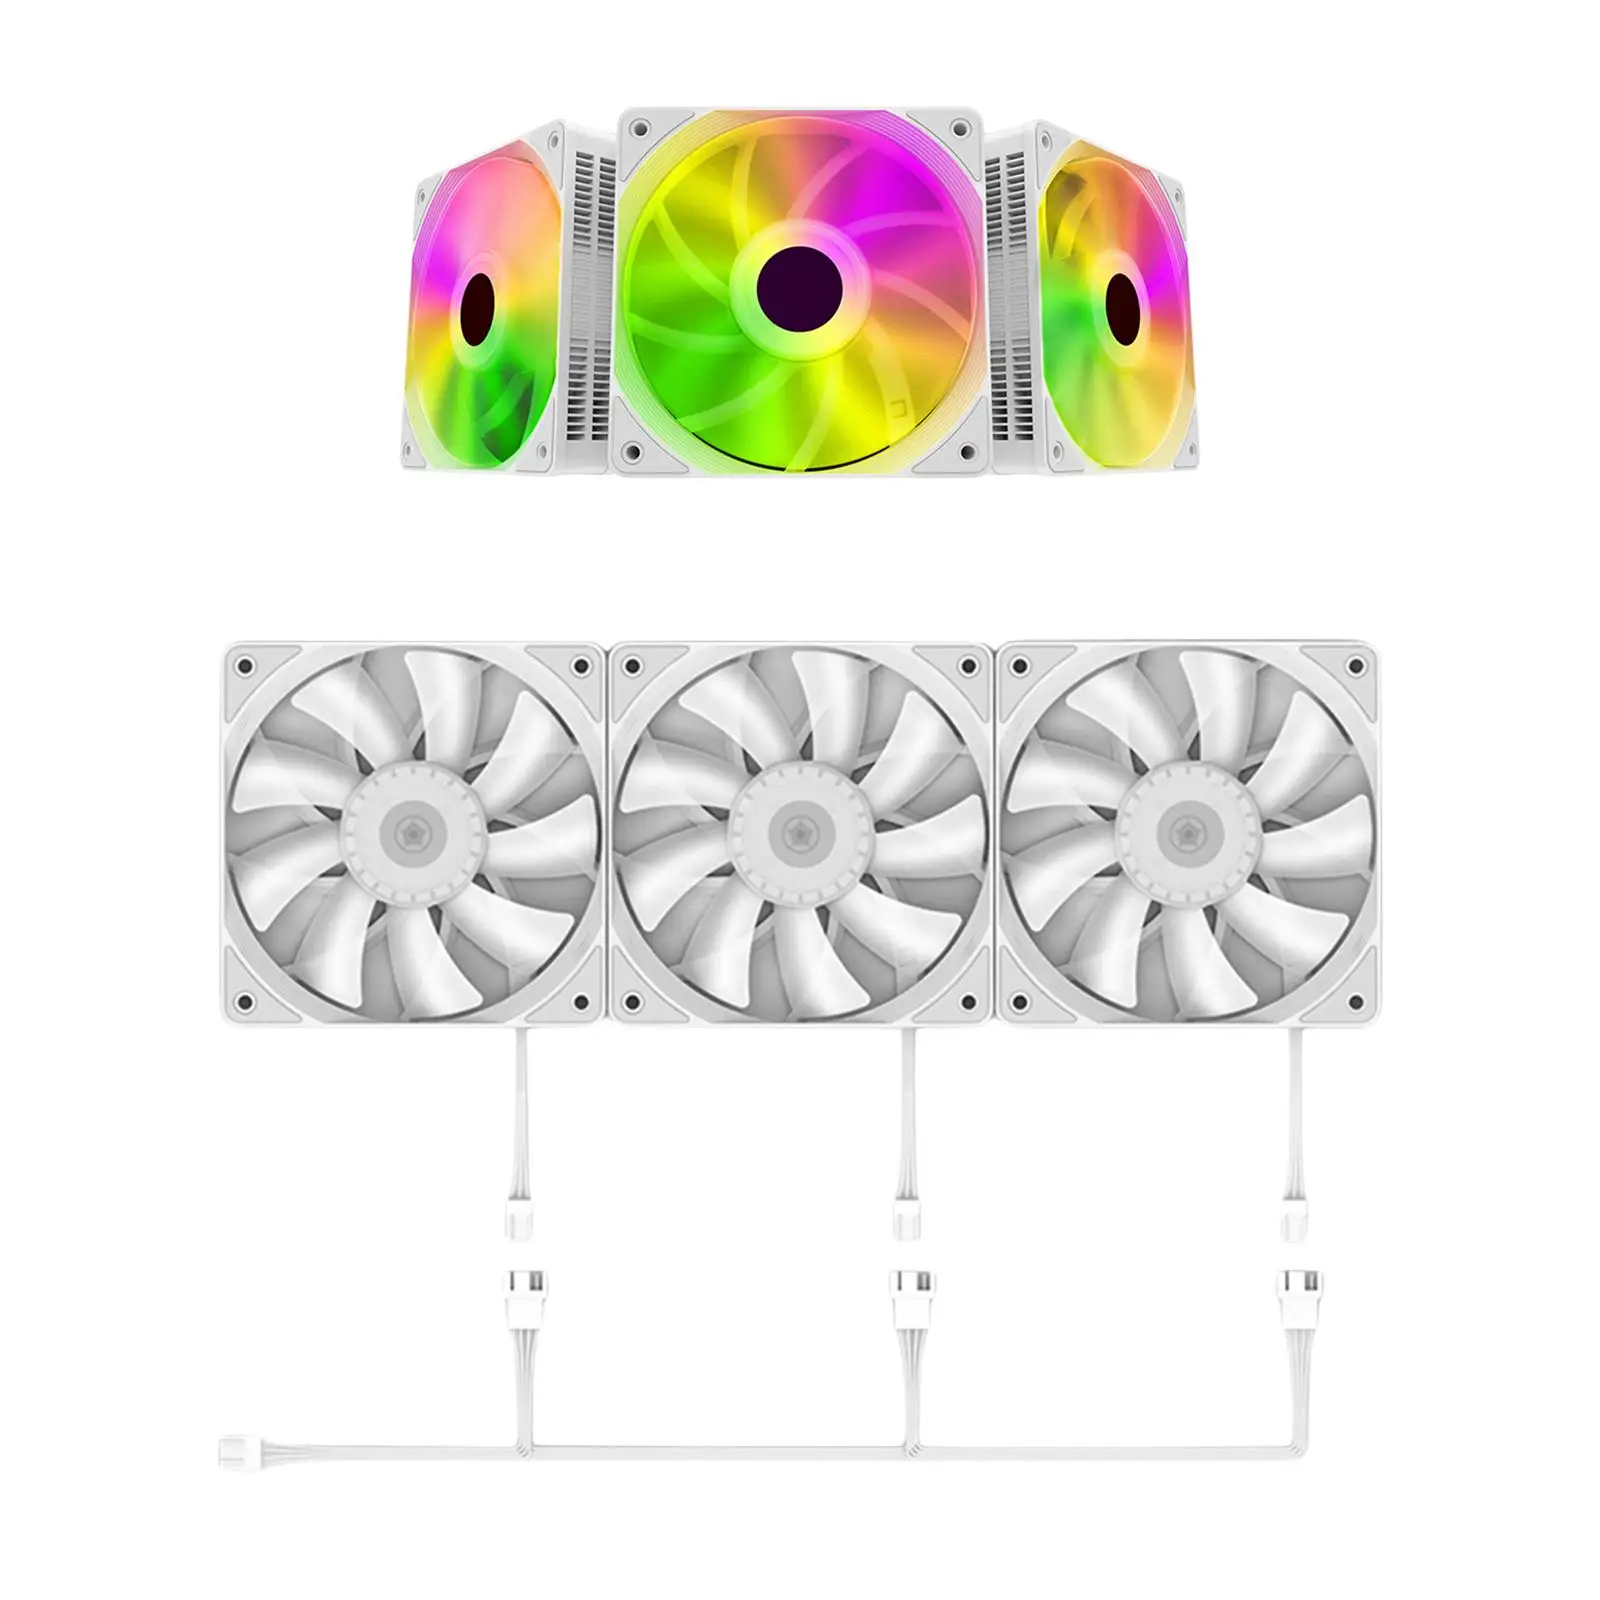 3Pcs 120mm Case Cooling Fan 1200RPM RGB LED Lighting Colorful Computer Case Fans